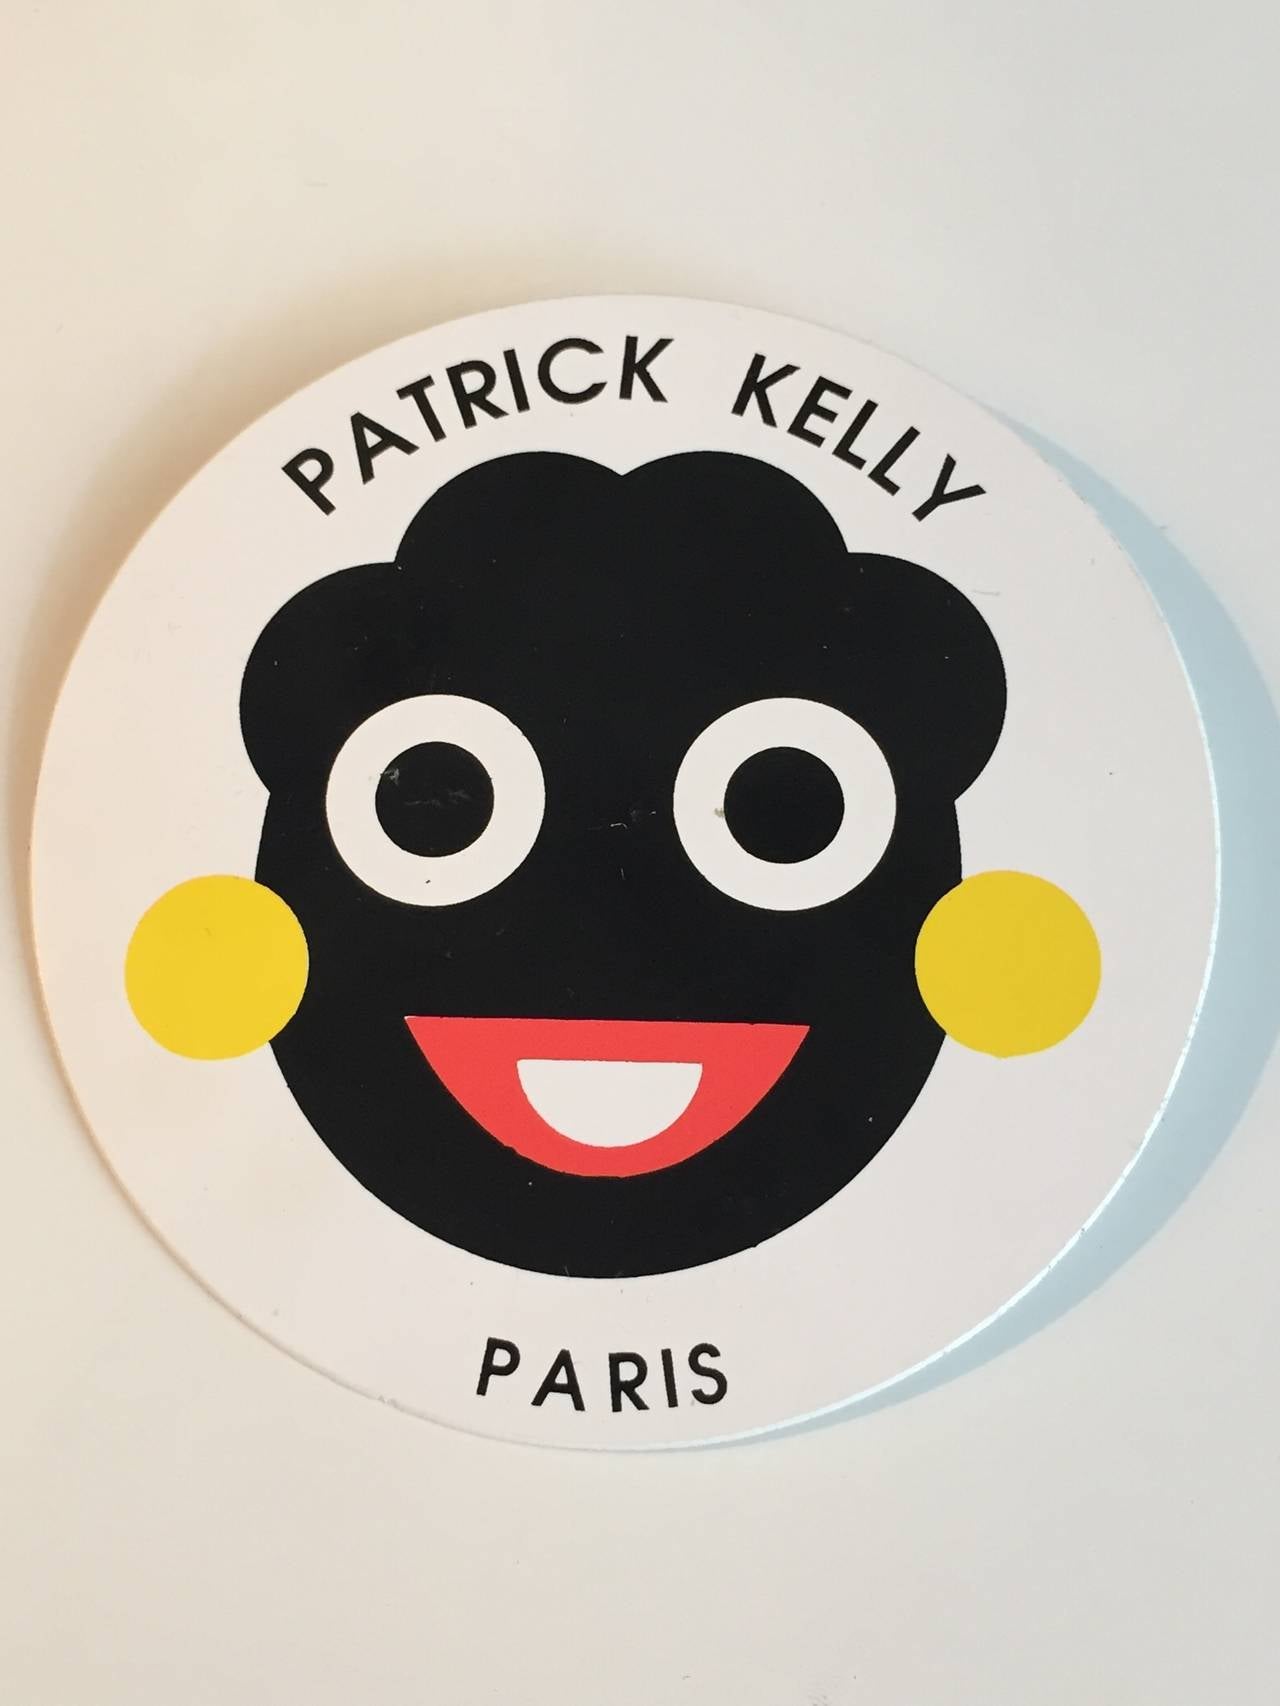 Women's or Men's Patrick Kelly 1988 happy face pin / brooch.